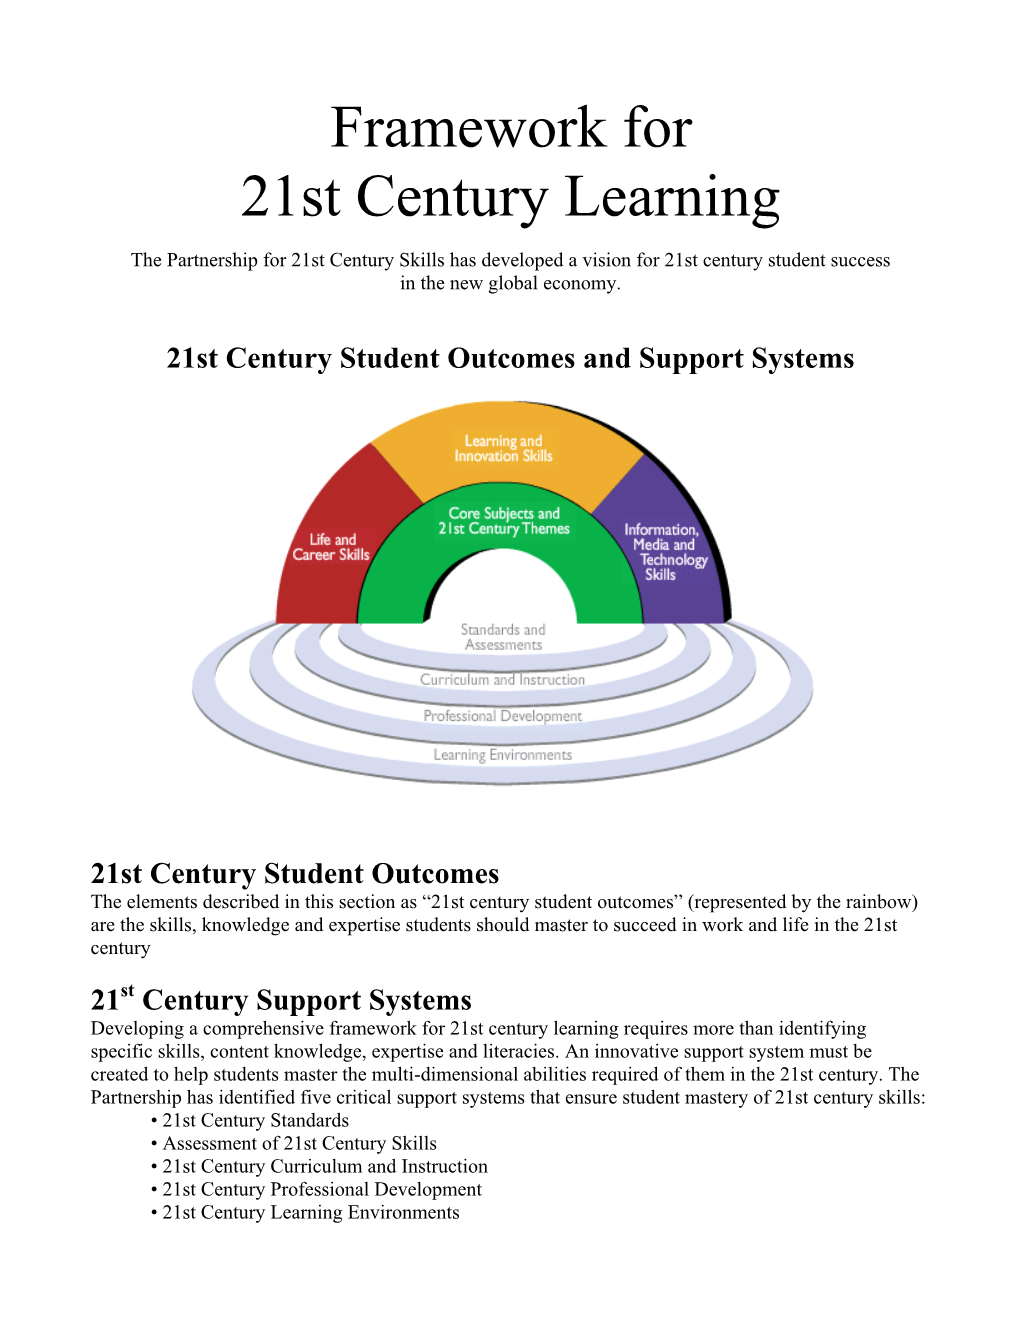 Framework for 21St Century Learning